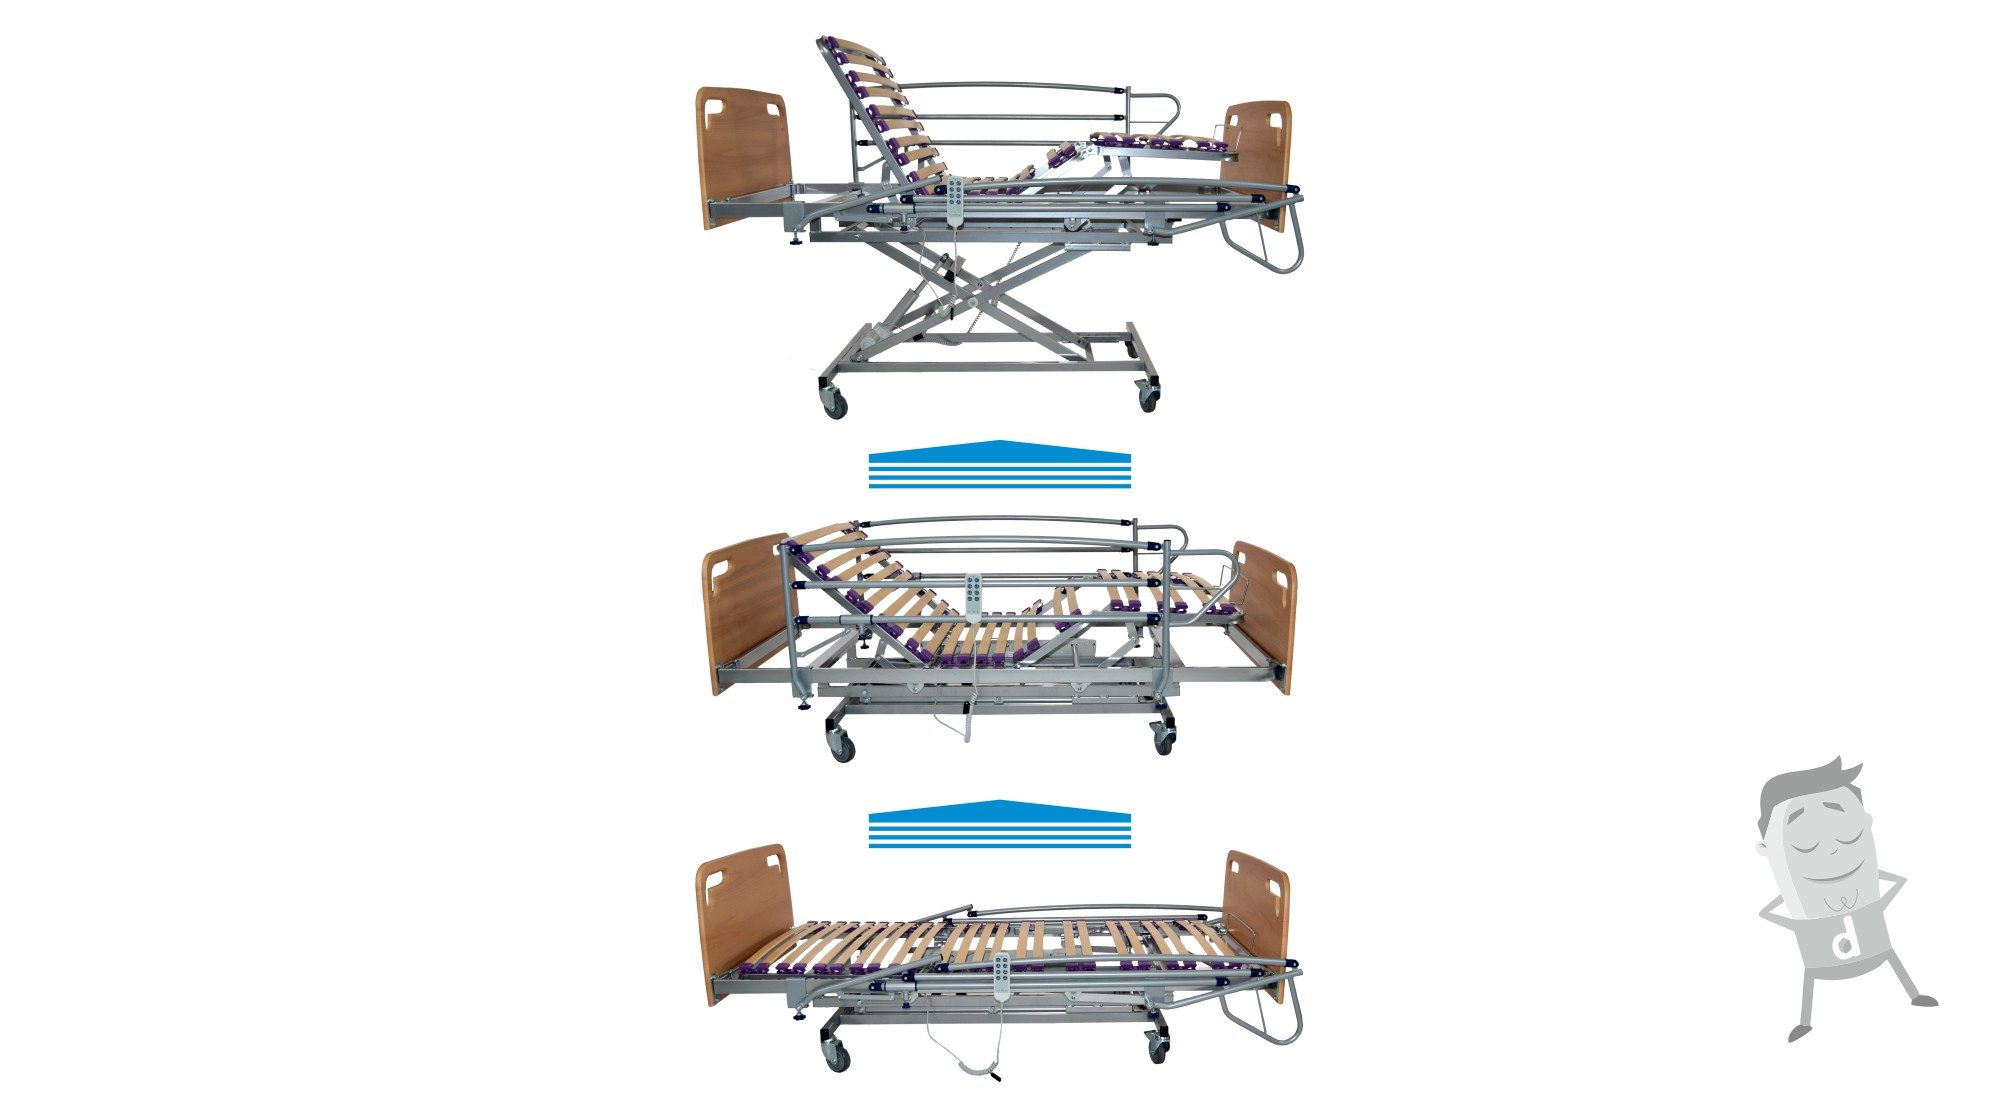 cama-hospitalaria-ortopedica-sanitaria-motorizada-para-enfermos-articulada-carro-elevador-regulables-varias-posiciones